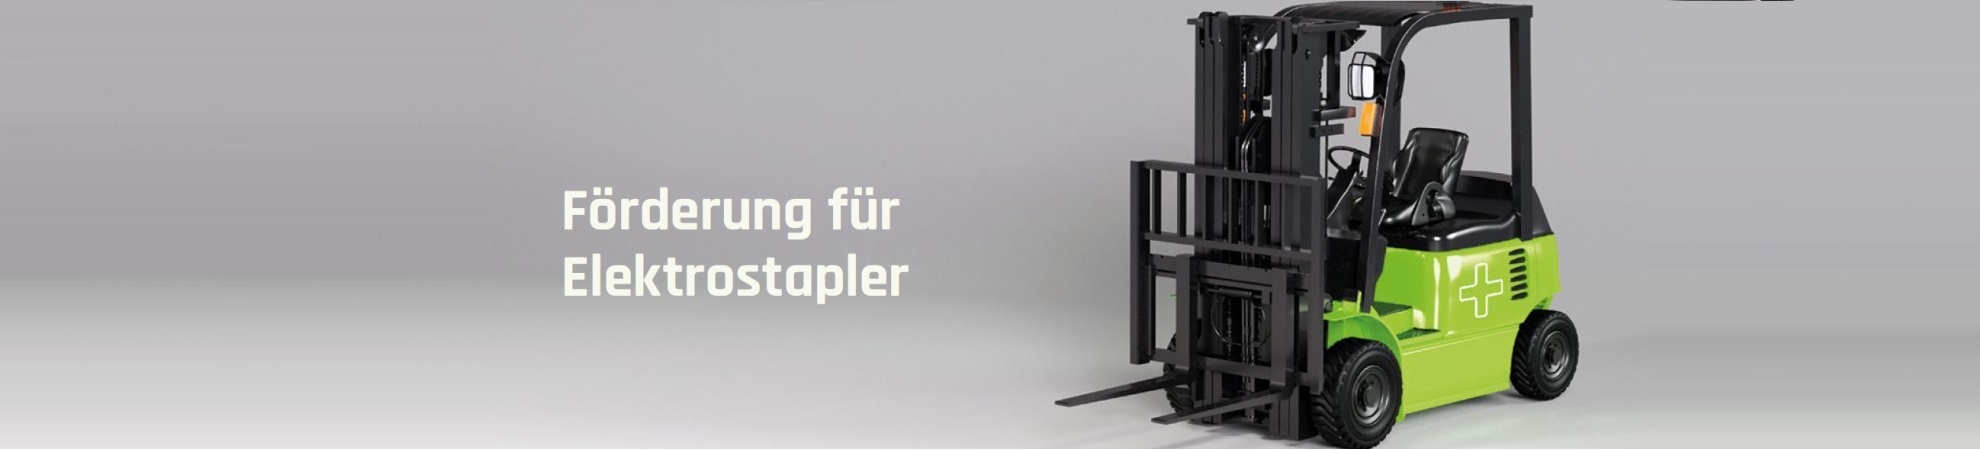 Förderung E-Stapler über CO2 Einsparung durch easysub plus GmbH